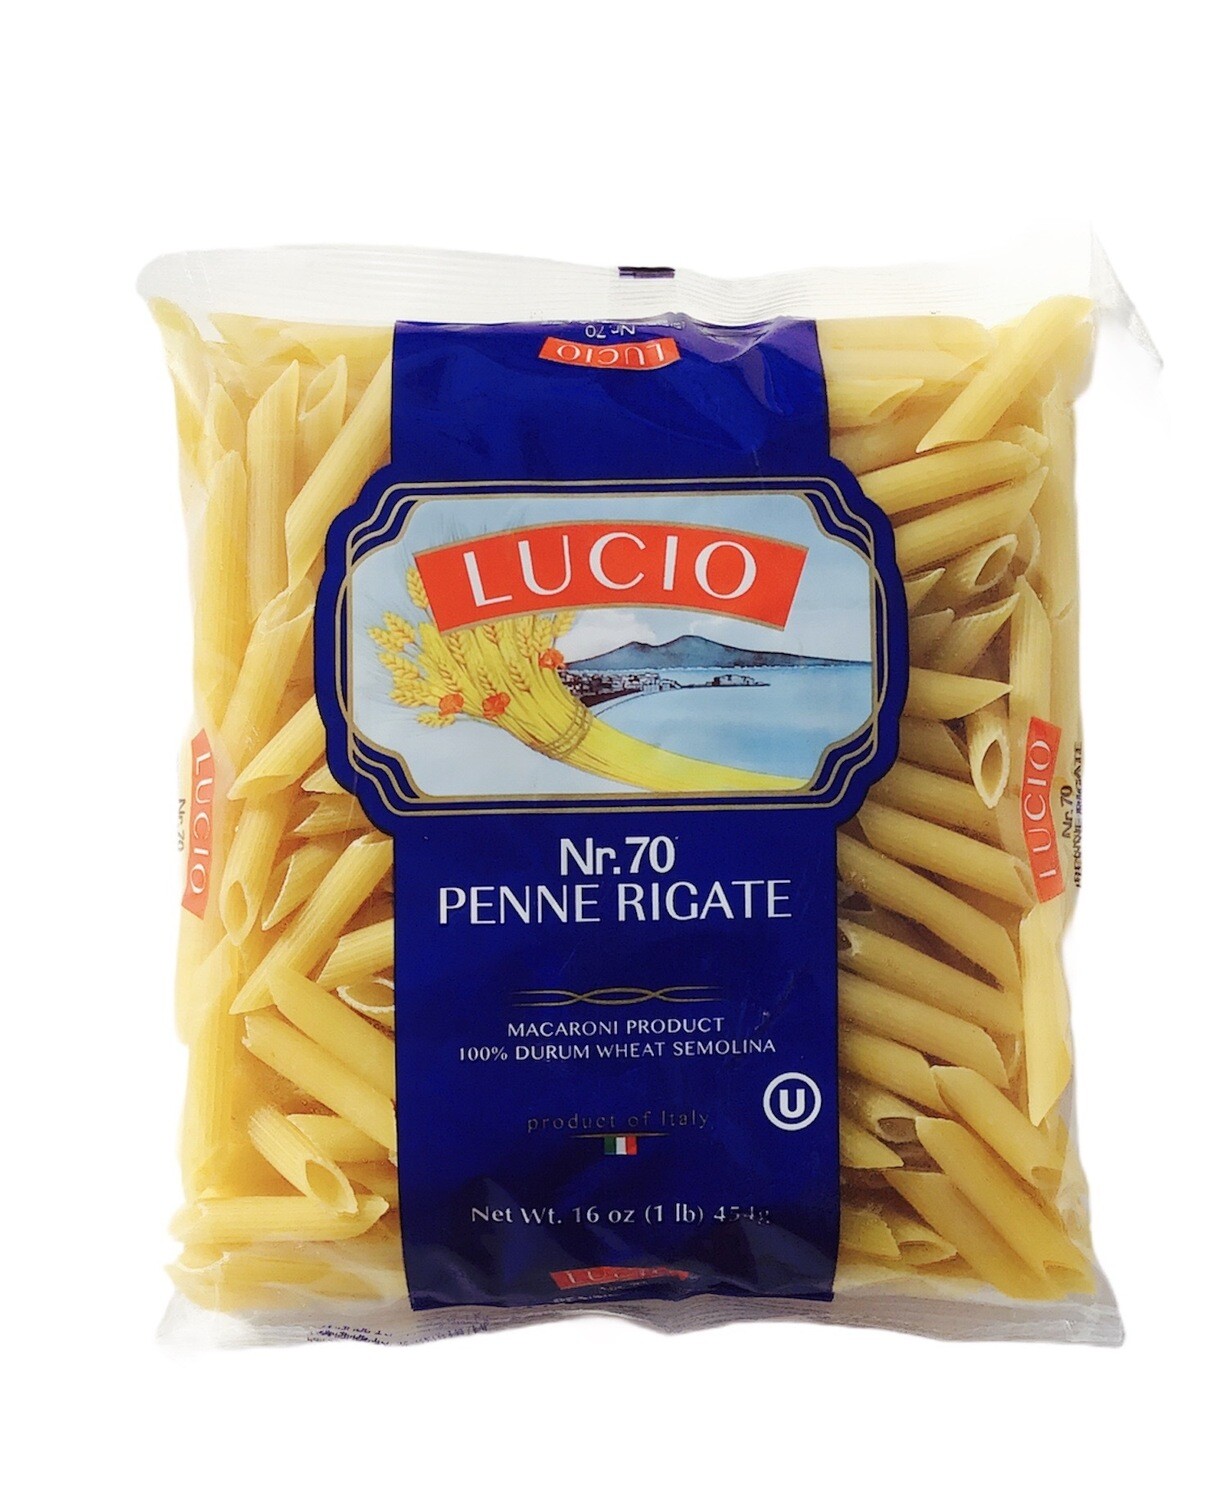 Lucio Penne Rigate Pasta 20x454g